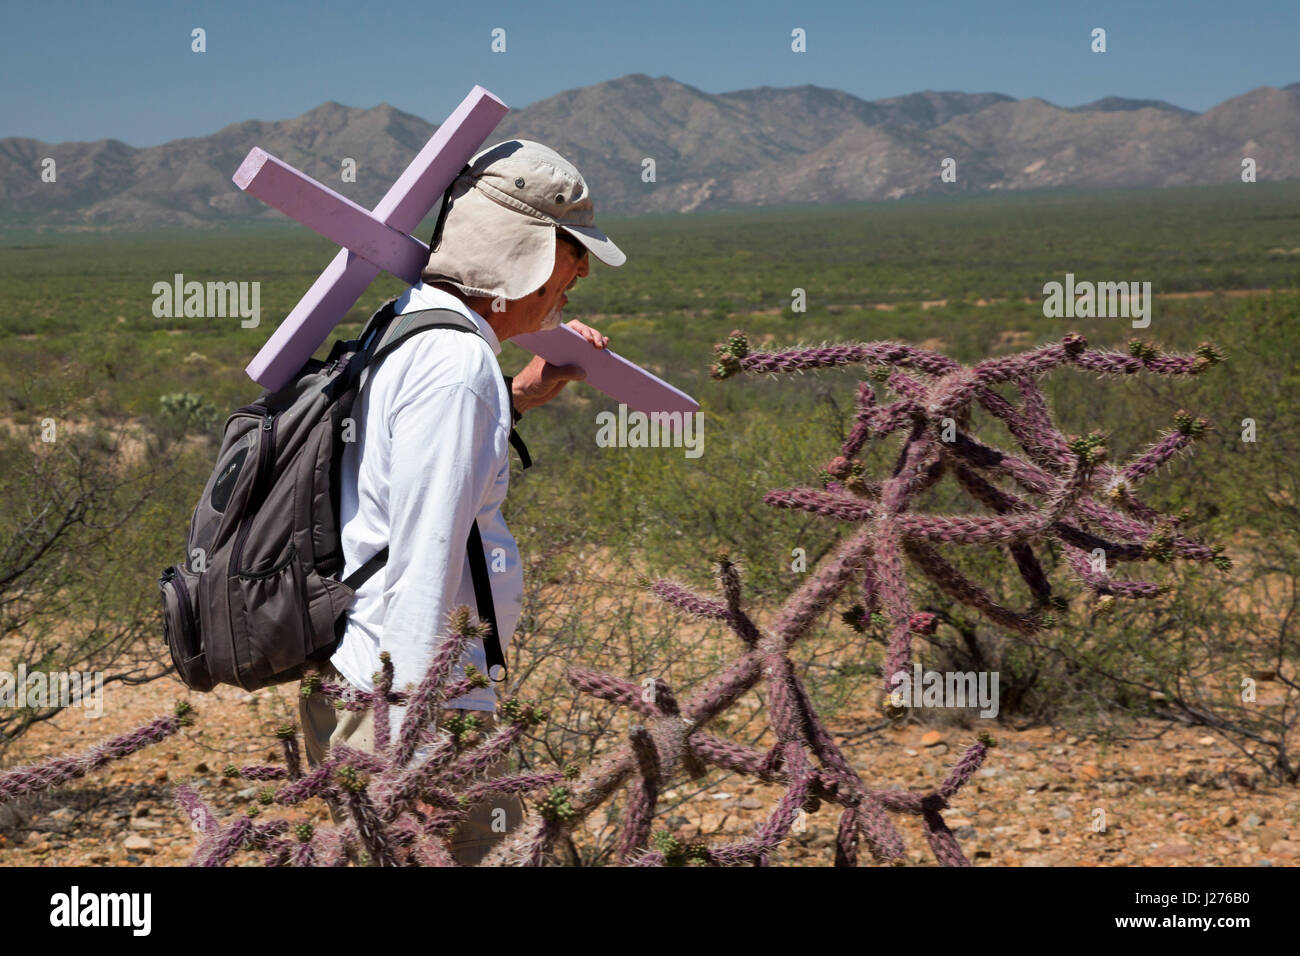 Tucson, Arizona - membres de la Tucson Samaritains place croix dans le désert des lieux où le reste des migrants n'a été trouvé. Des centaines de mig Banque D'Images